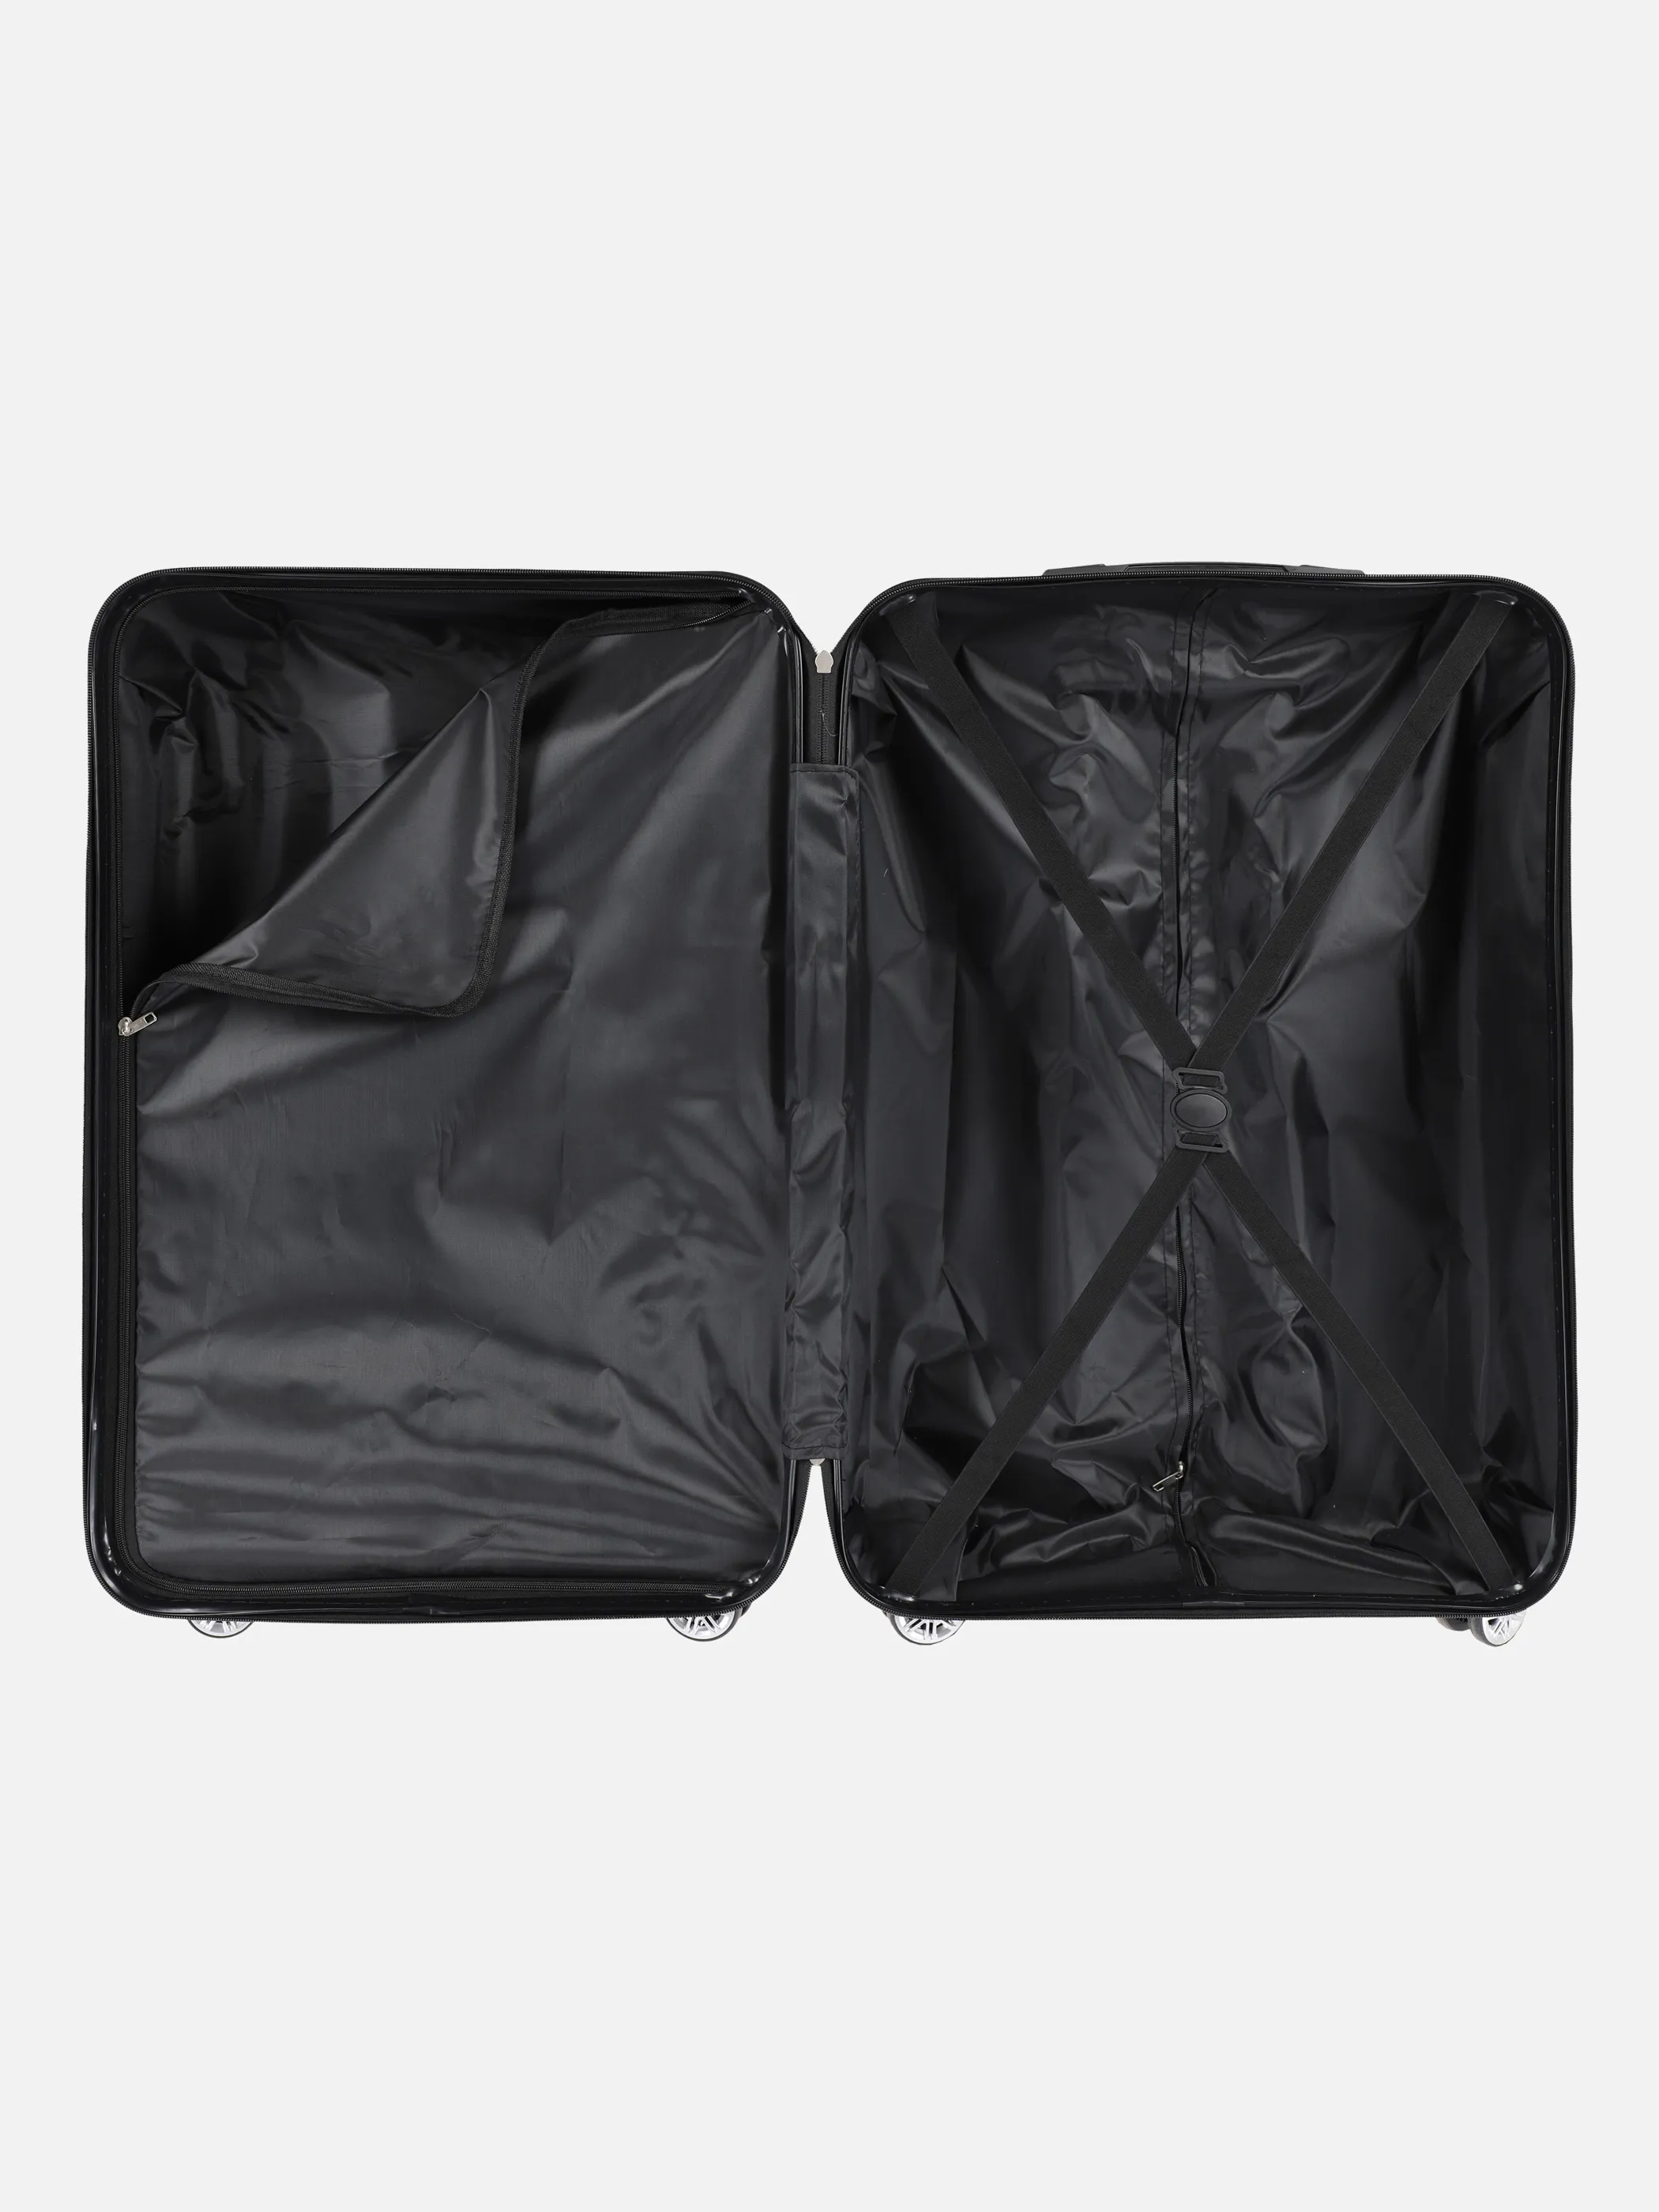 Koffer/Taschen Koffer Avalon M 67x44x26 Grau 884545 ANTHRA 3